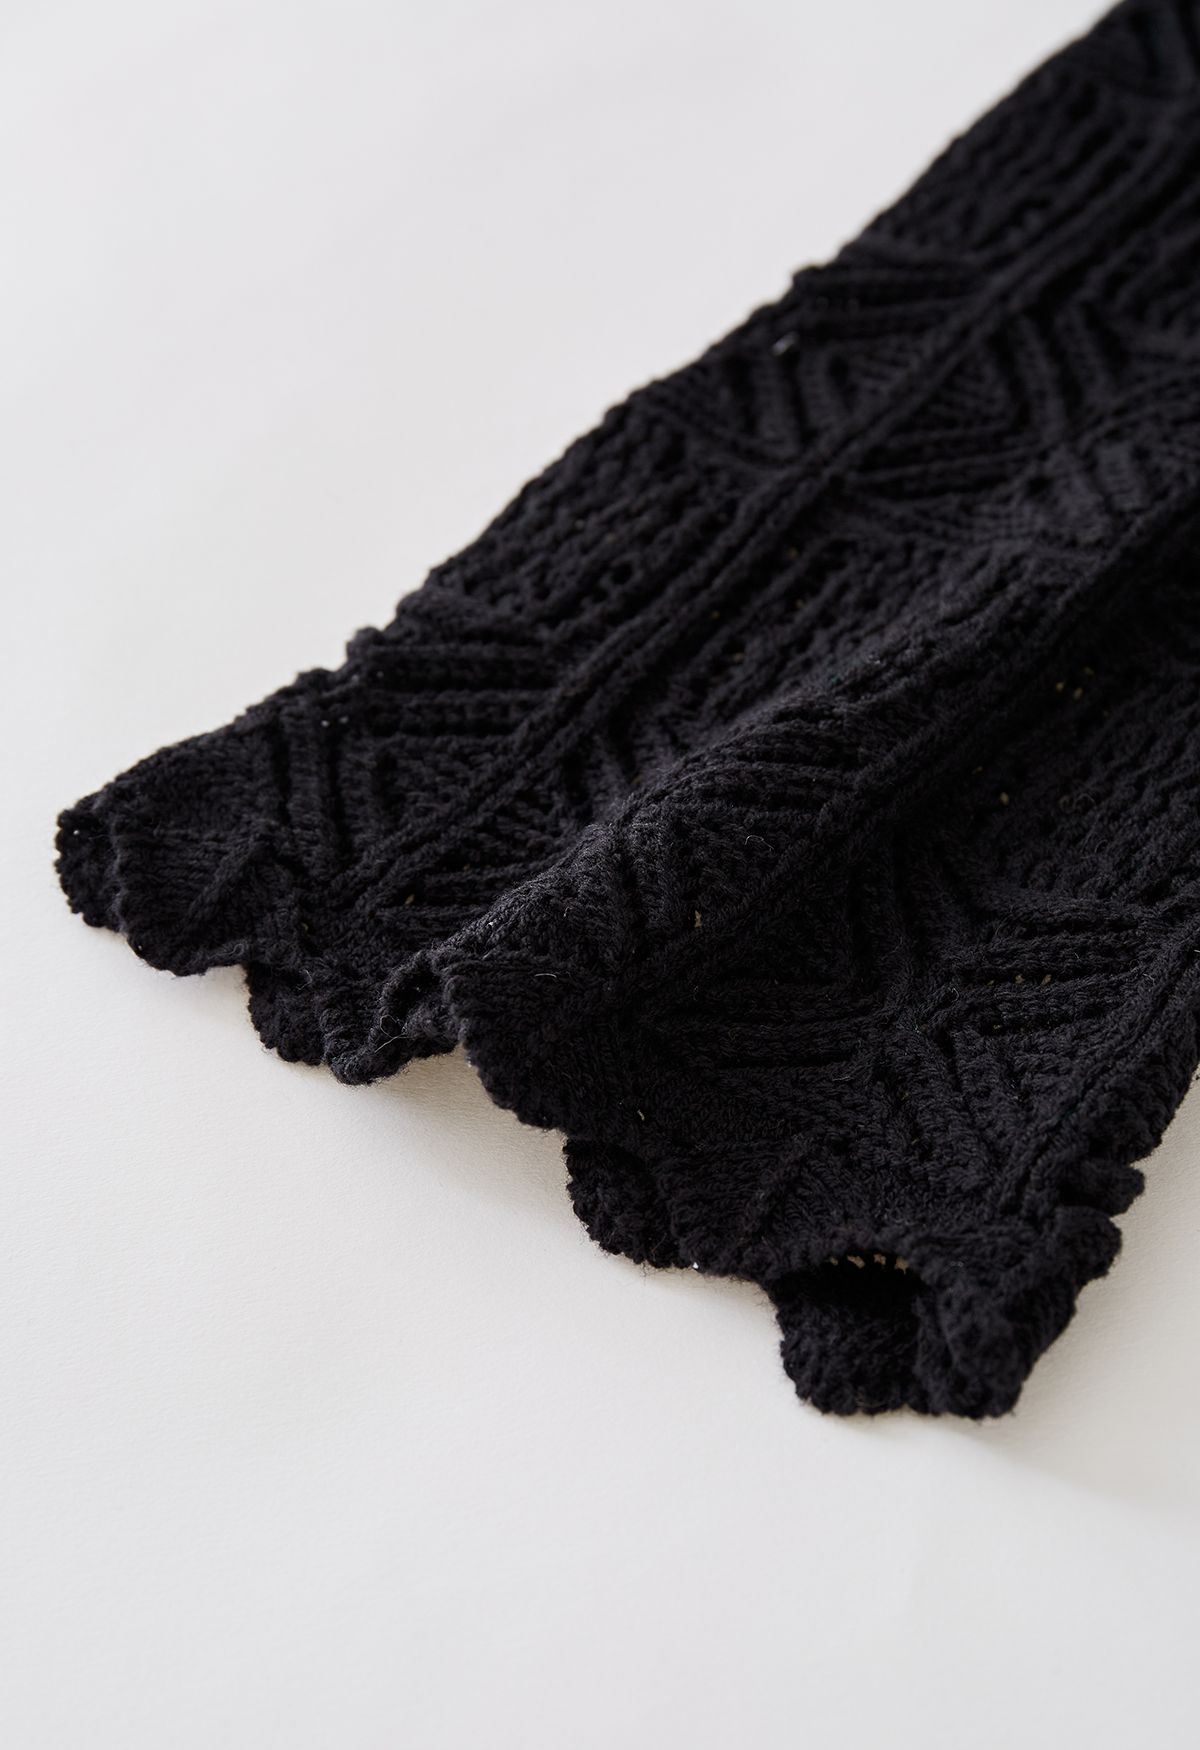 Haut court en tricot à manches évasées évidées en noir